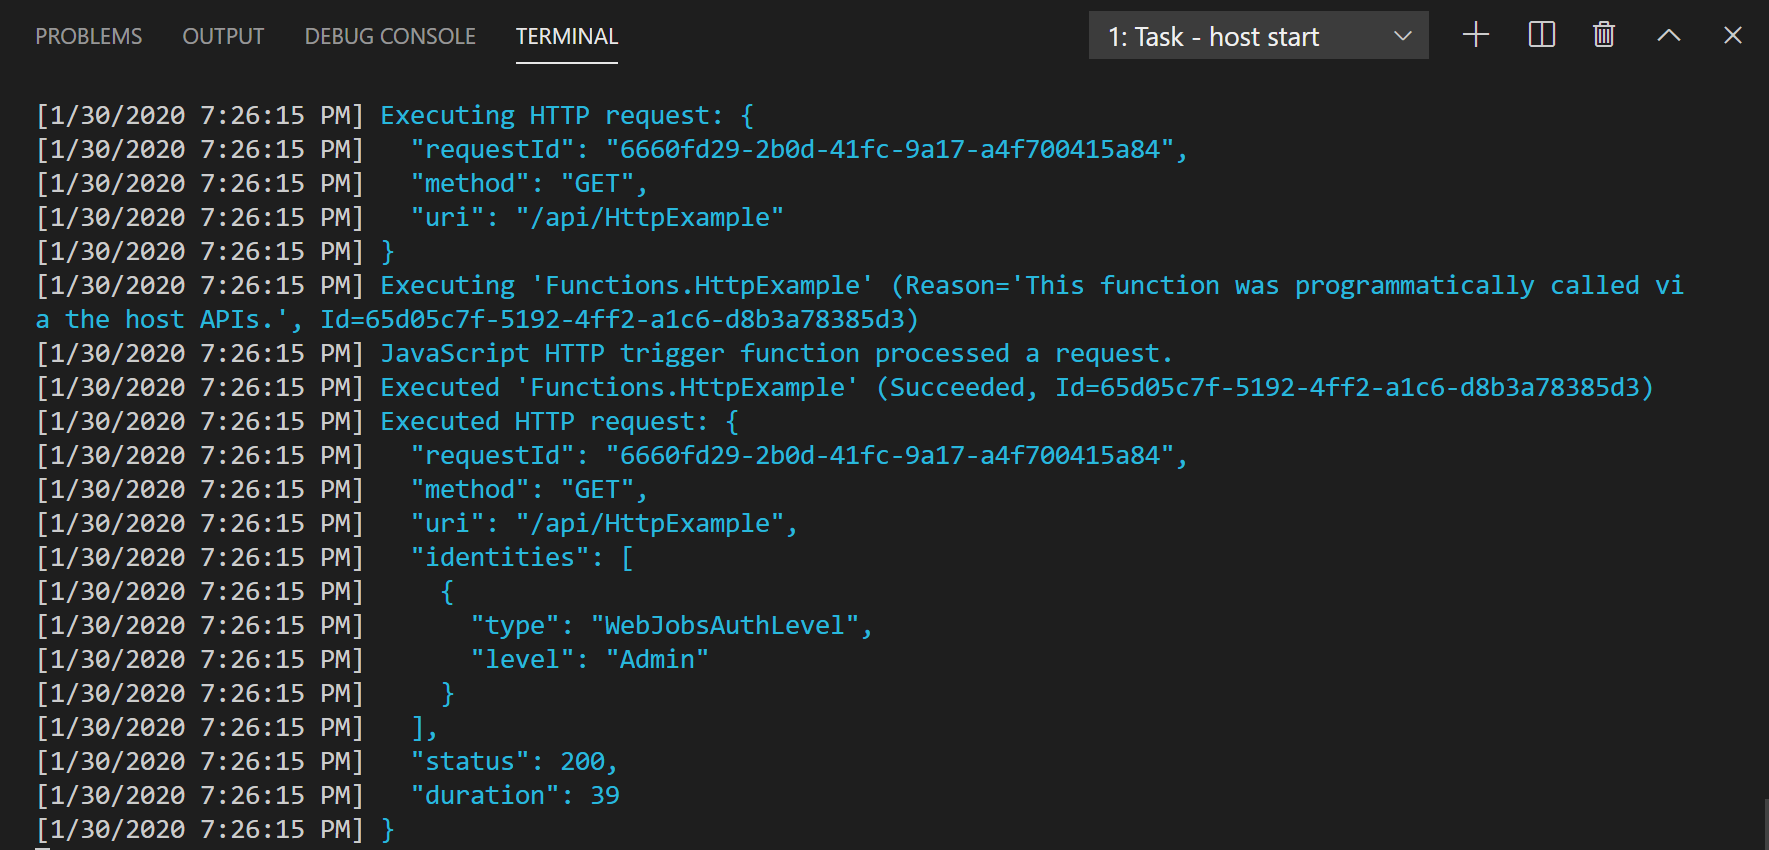 Task host start - VS Code terminal output